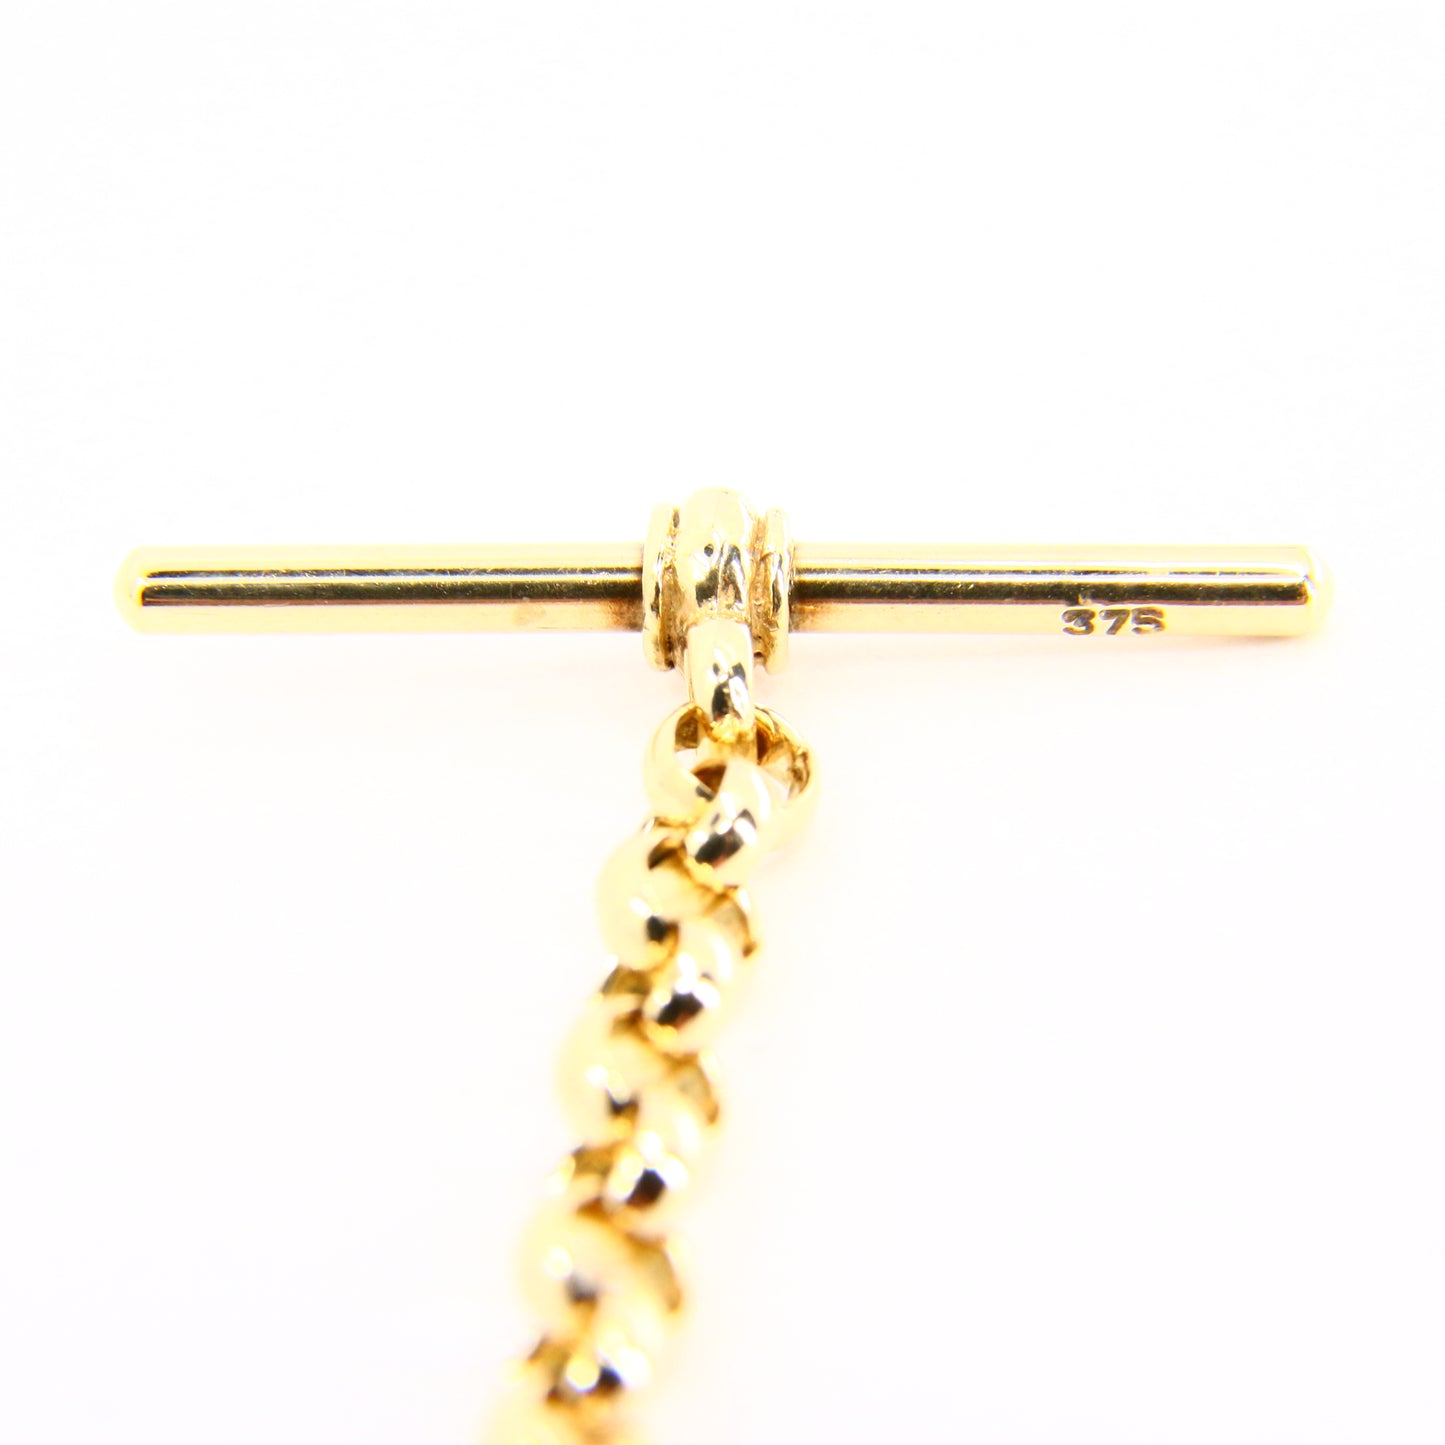 Vintage 9ct Slider T Bar Belcher Chain Necklace Yellow Gold Necklace Hallmarked